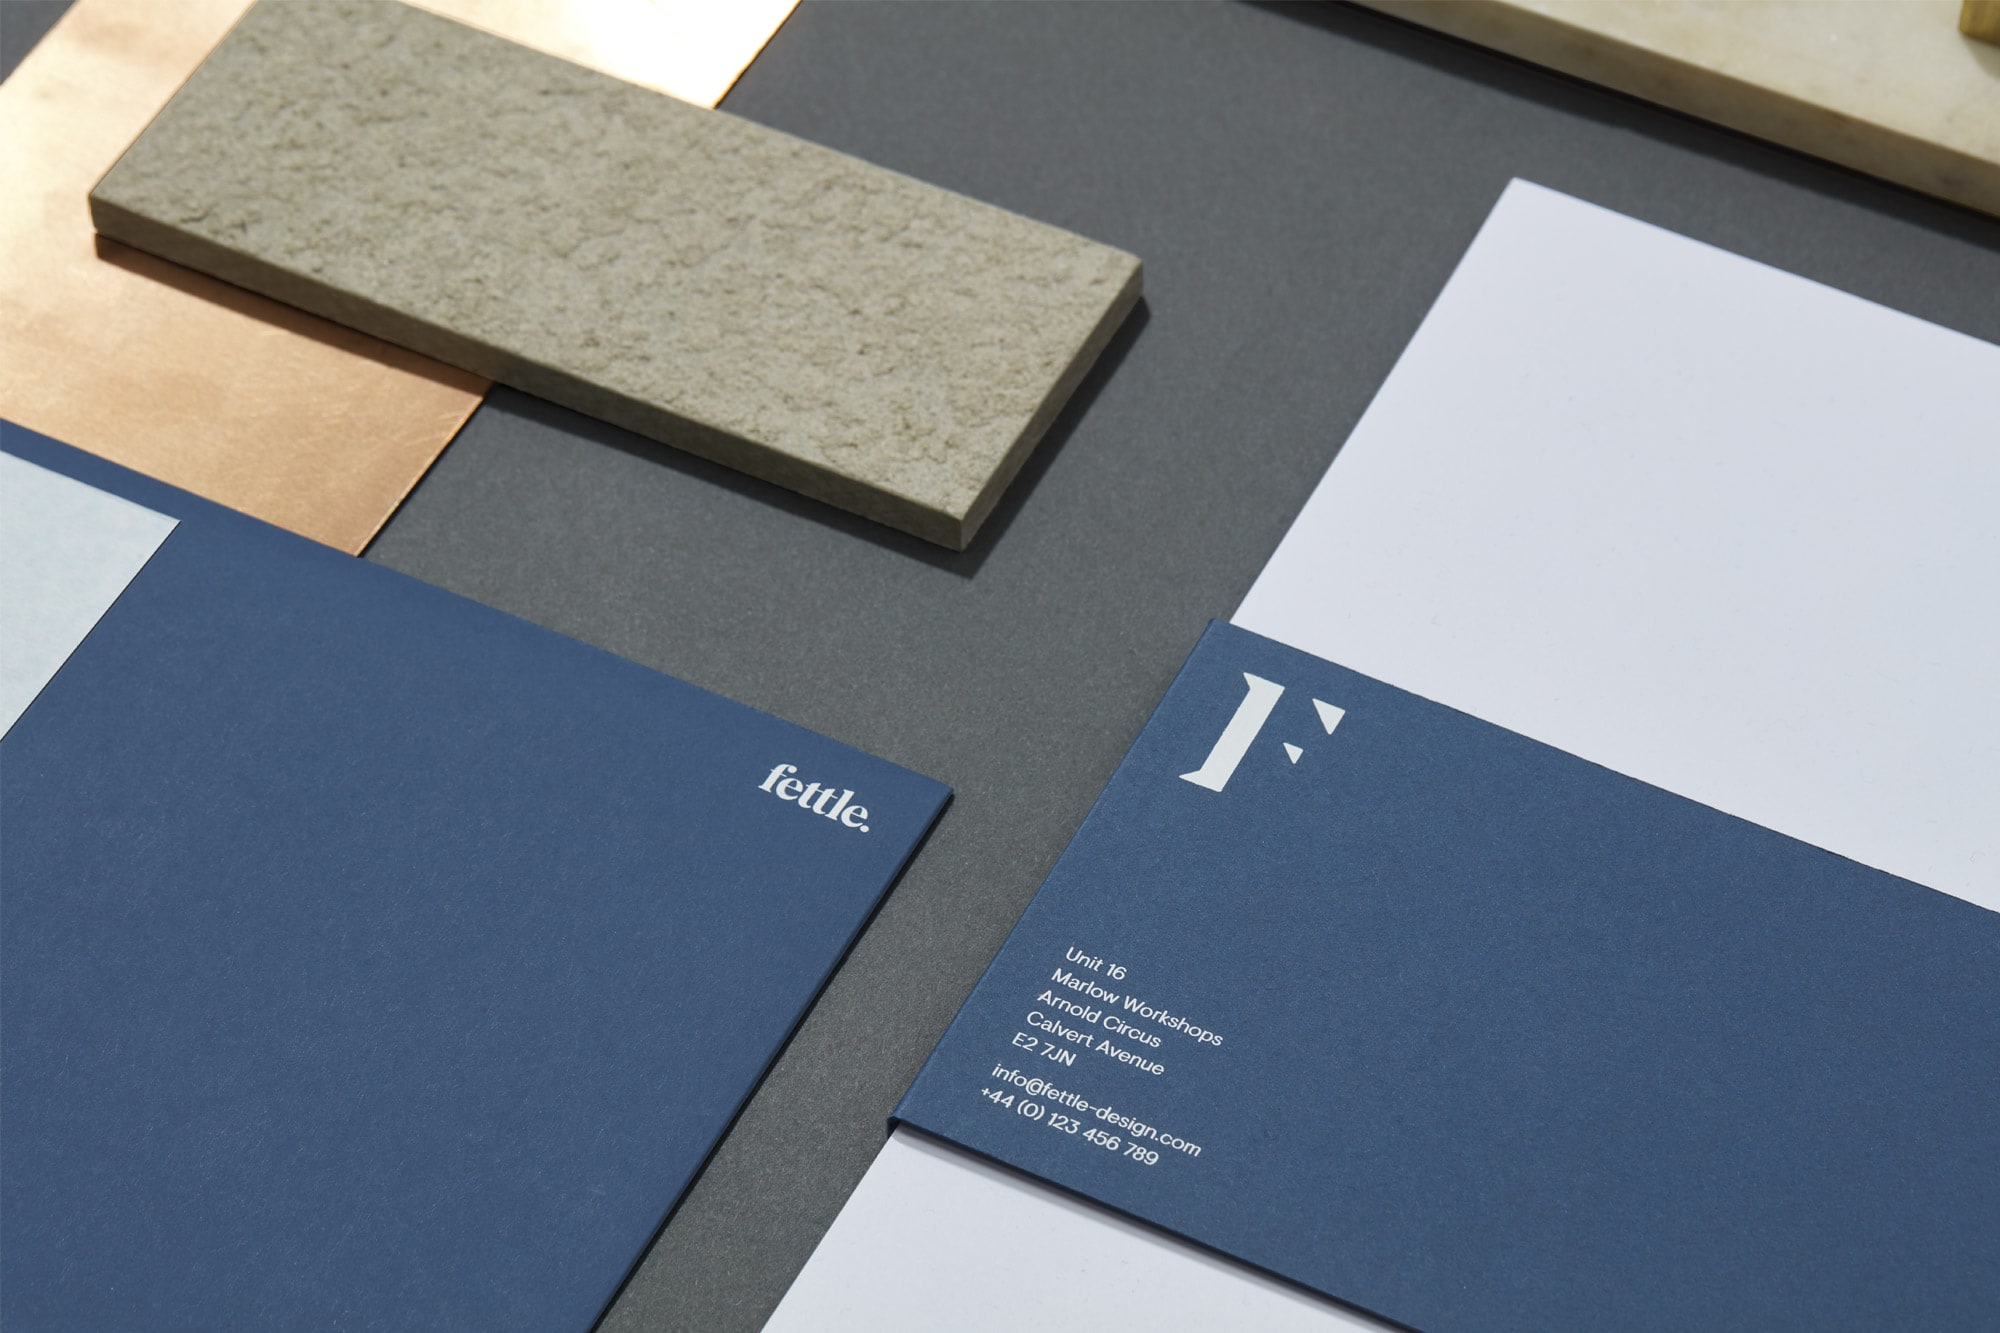 Fettle Design studio – Brand identity by land of plenty.